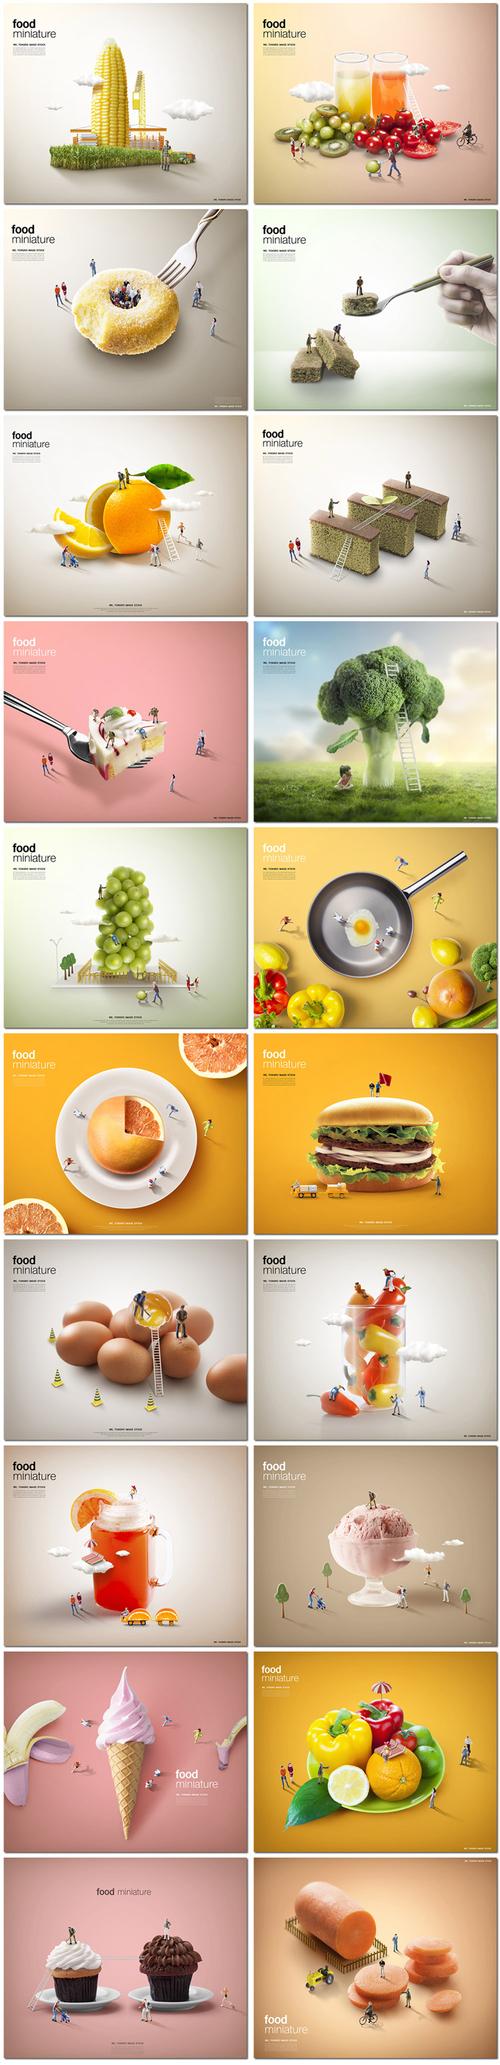 美食健康饮食汉堡早餐甜品合成创意广告海报psd海报设计模板素材